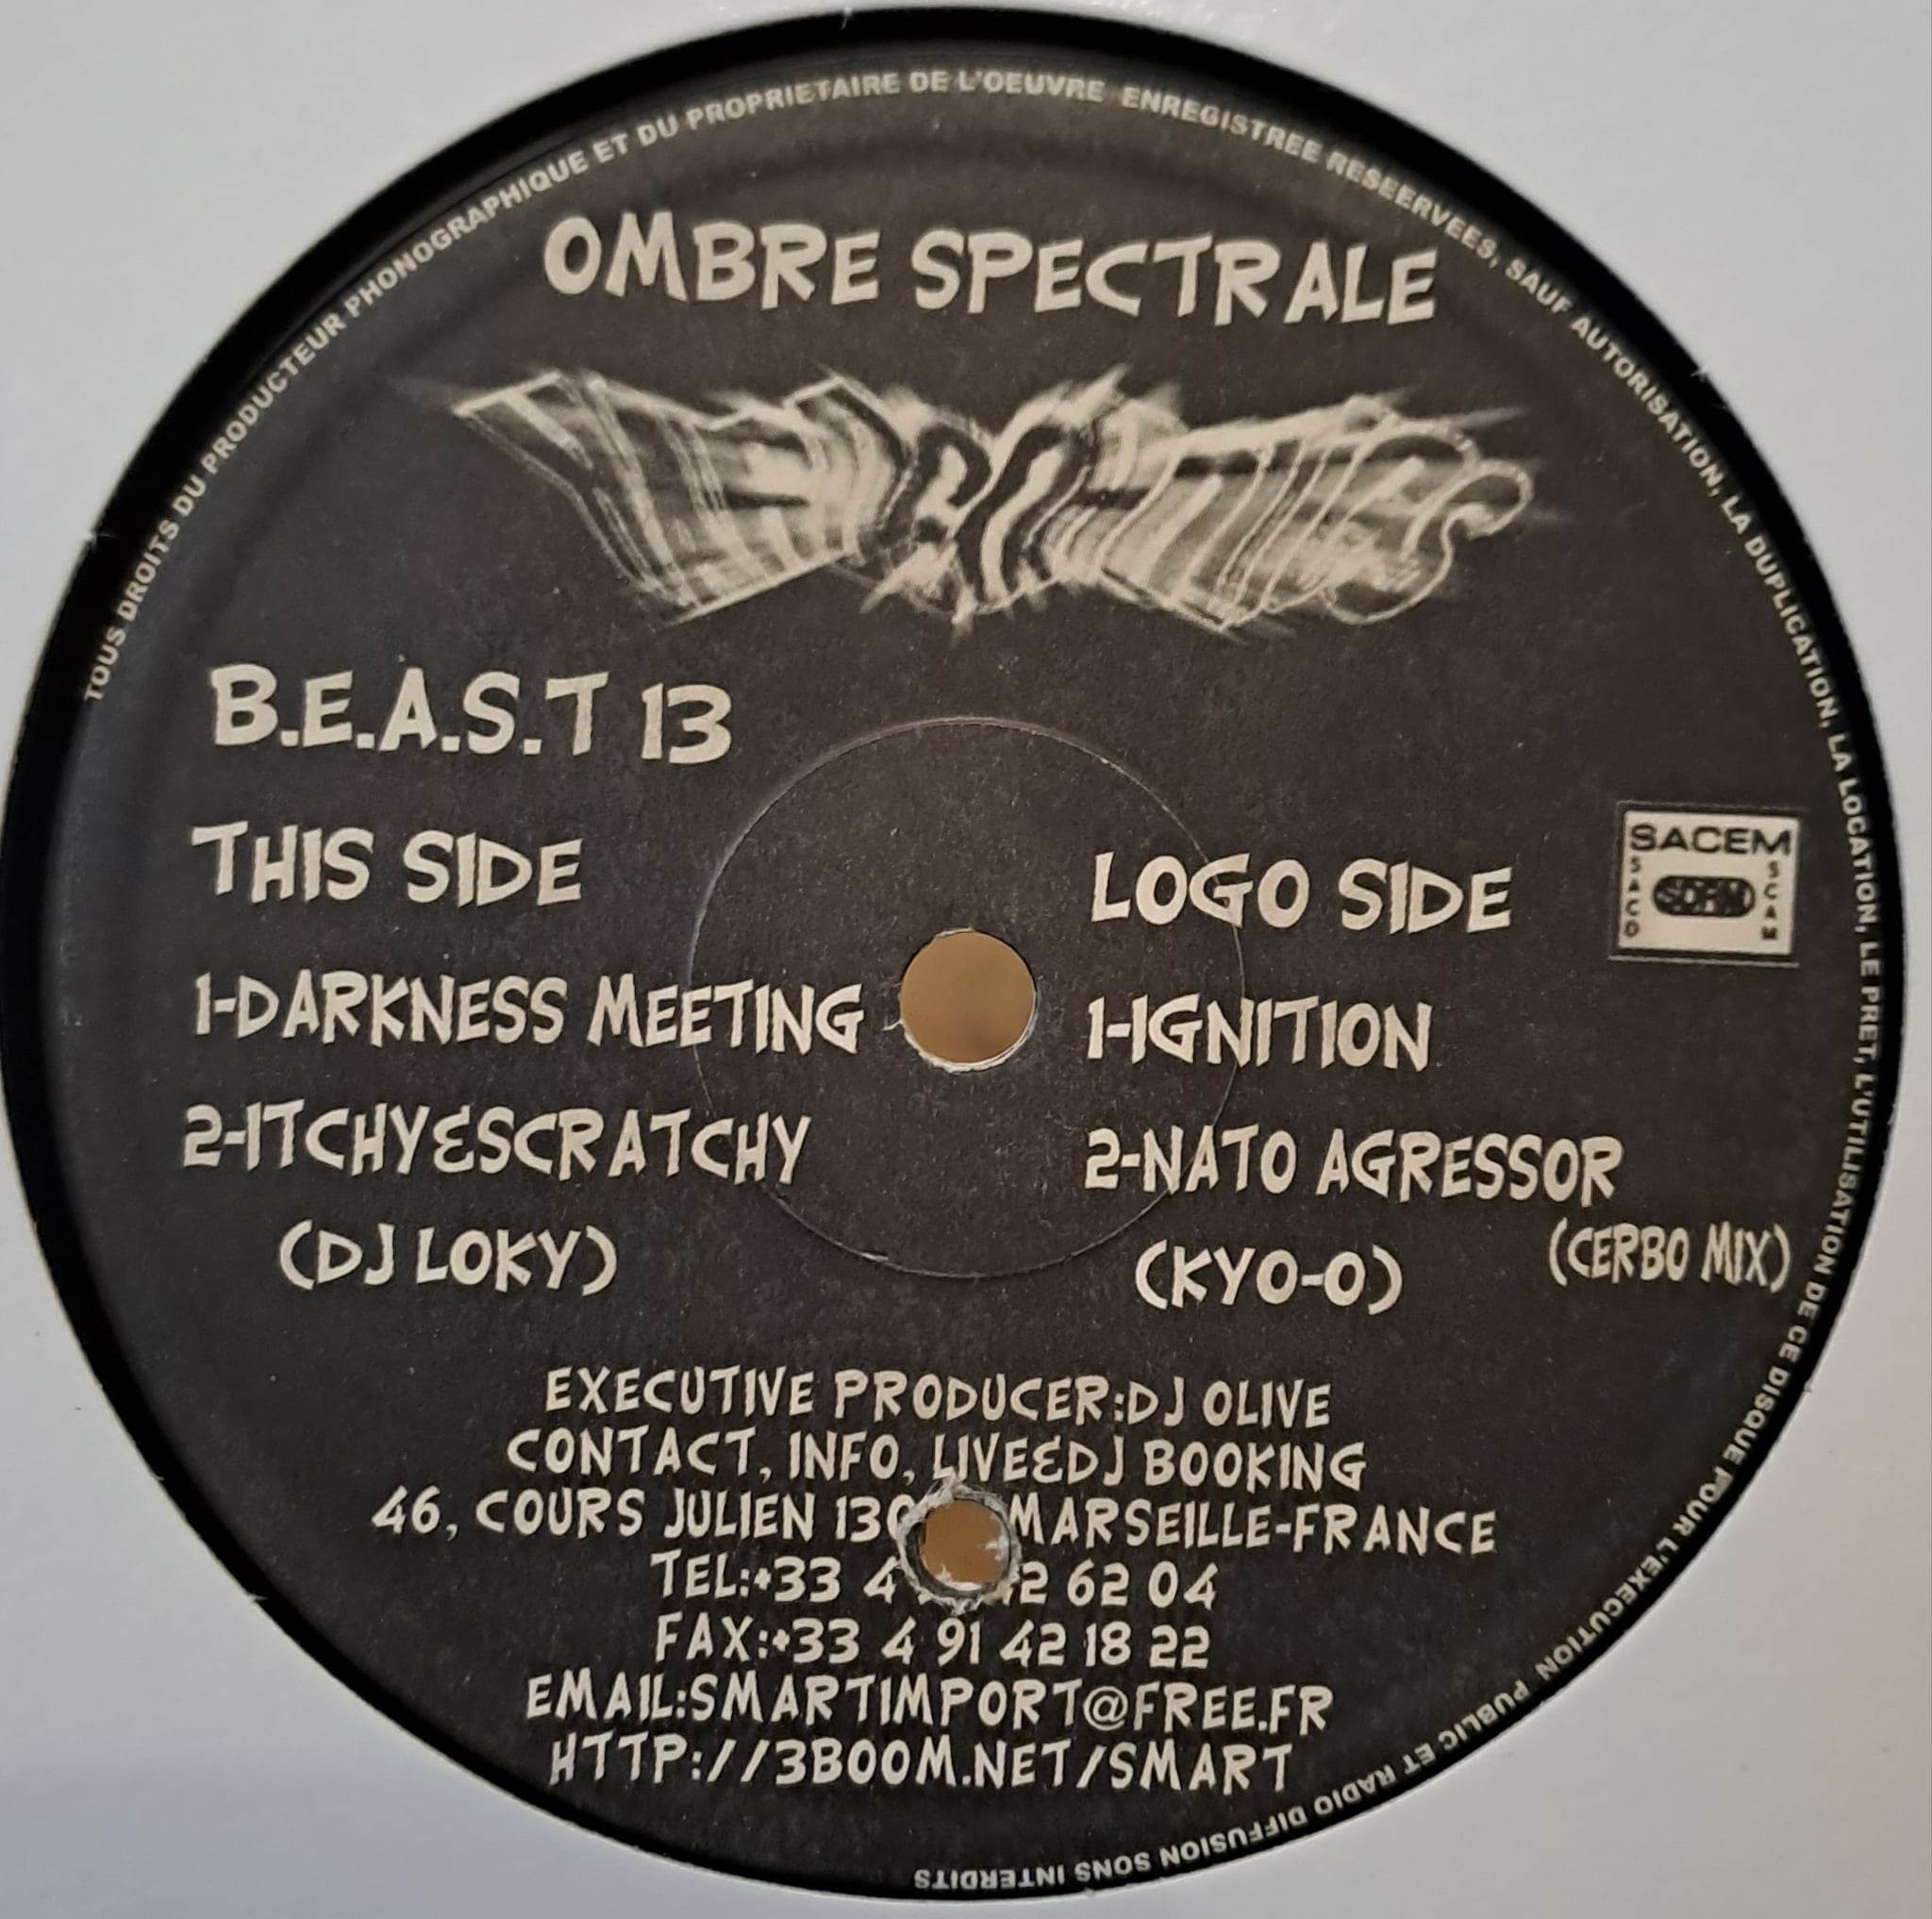 1) B.E.A.S.T 13 - vinyle hardcore